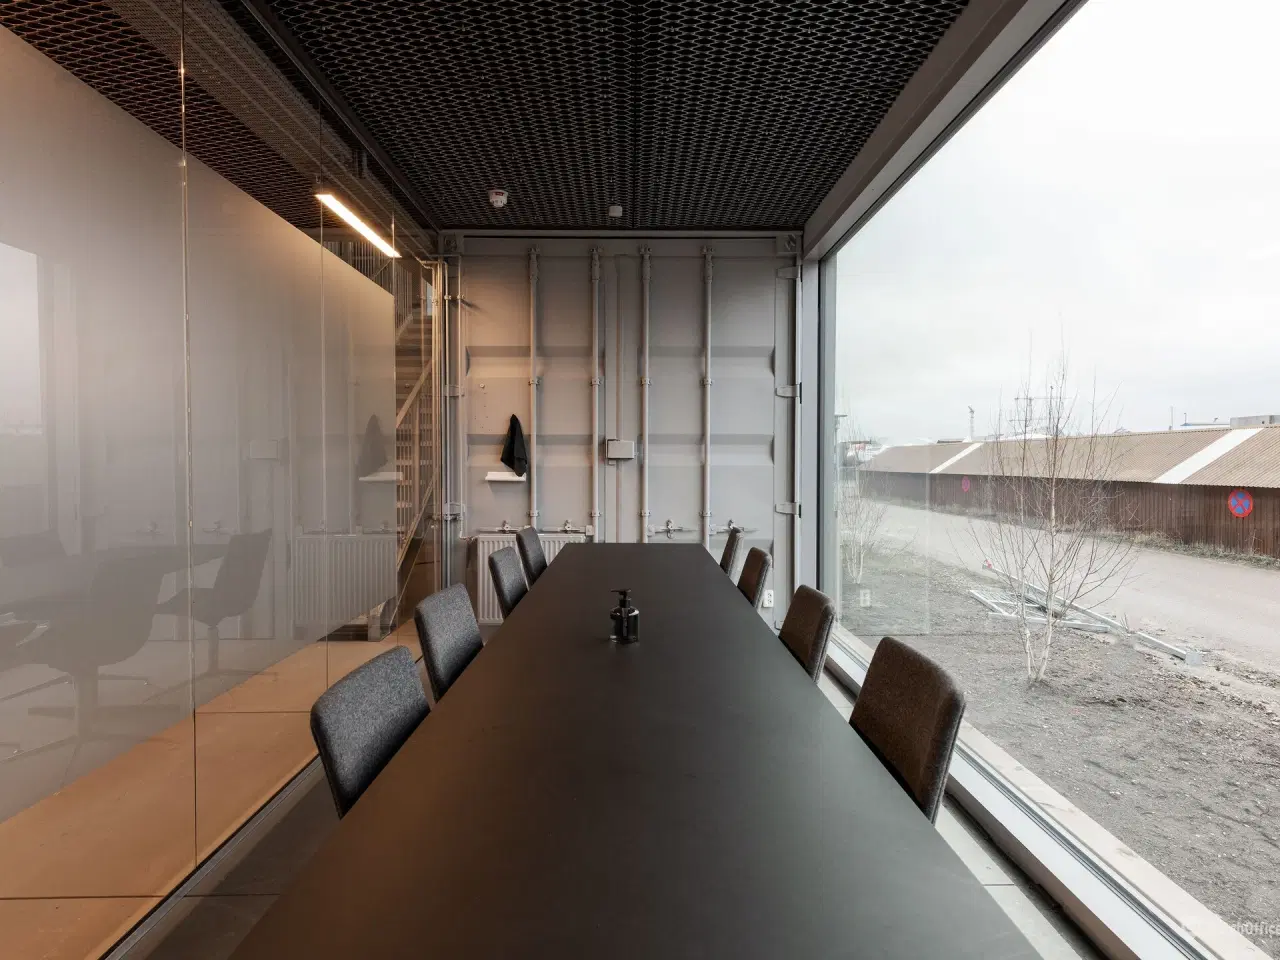 Billede 1 - 3-4 mands kontor med faktastiks lys og kig til havnen